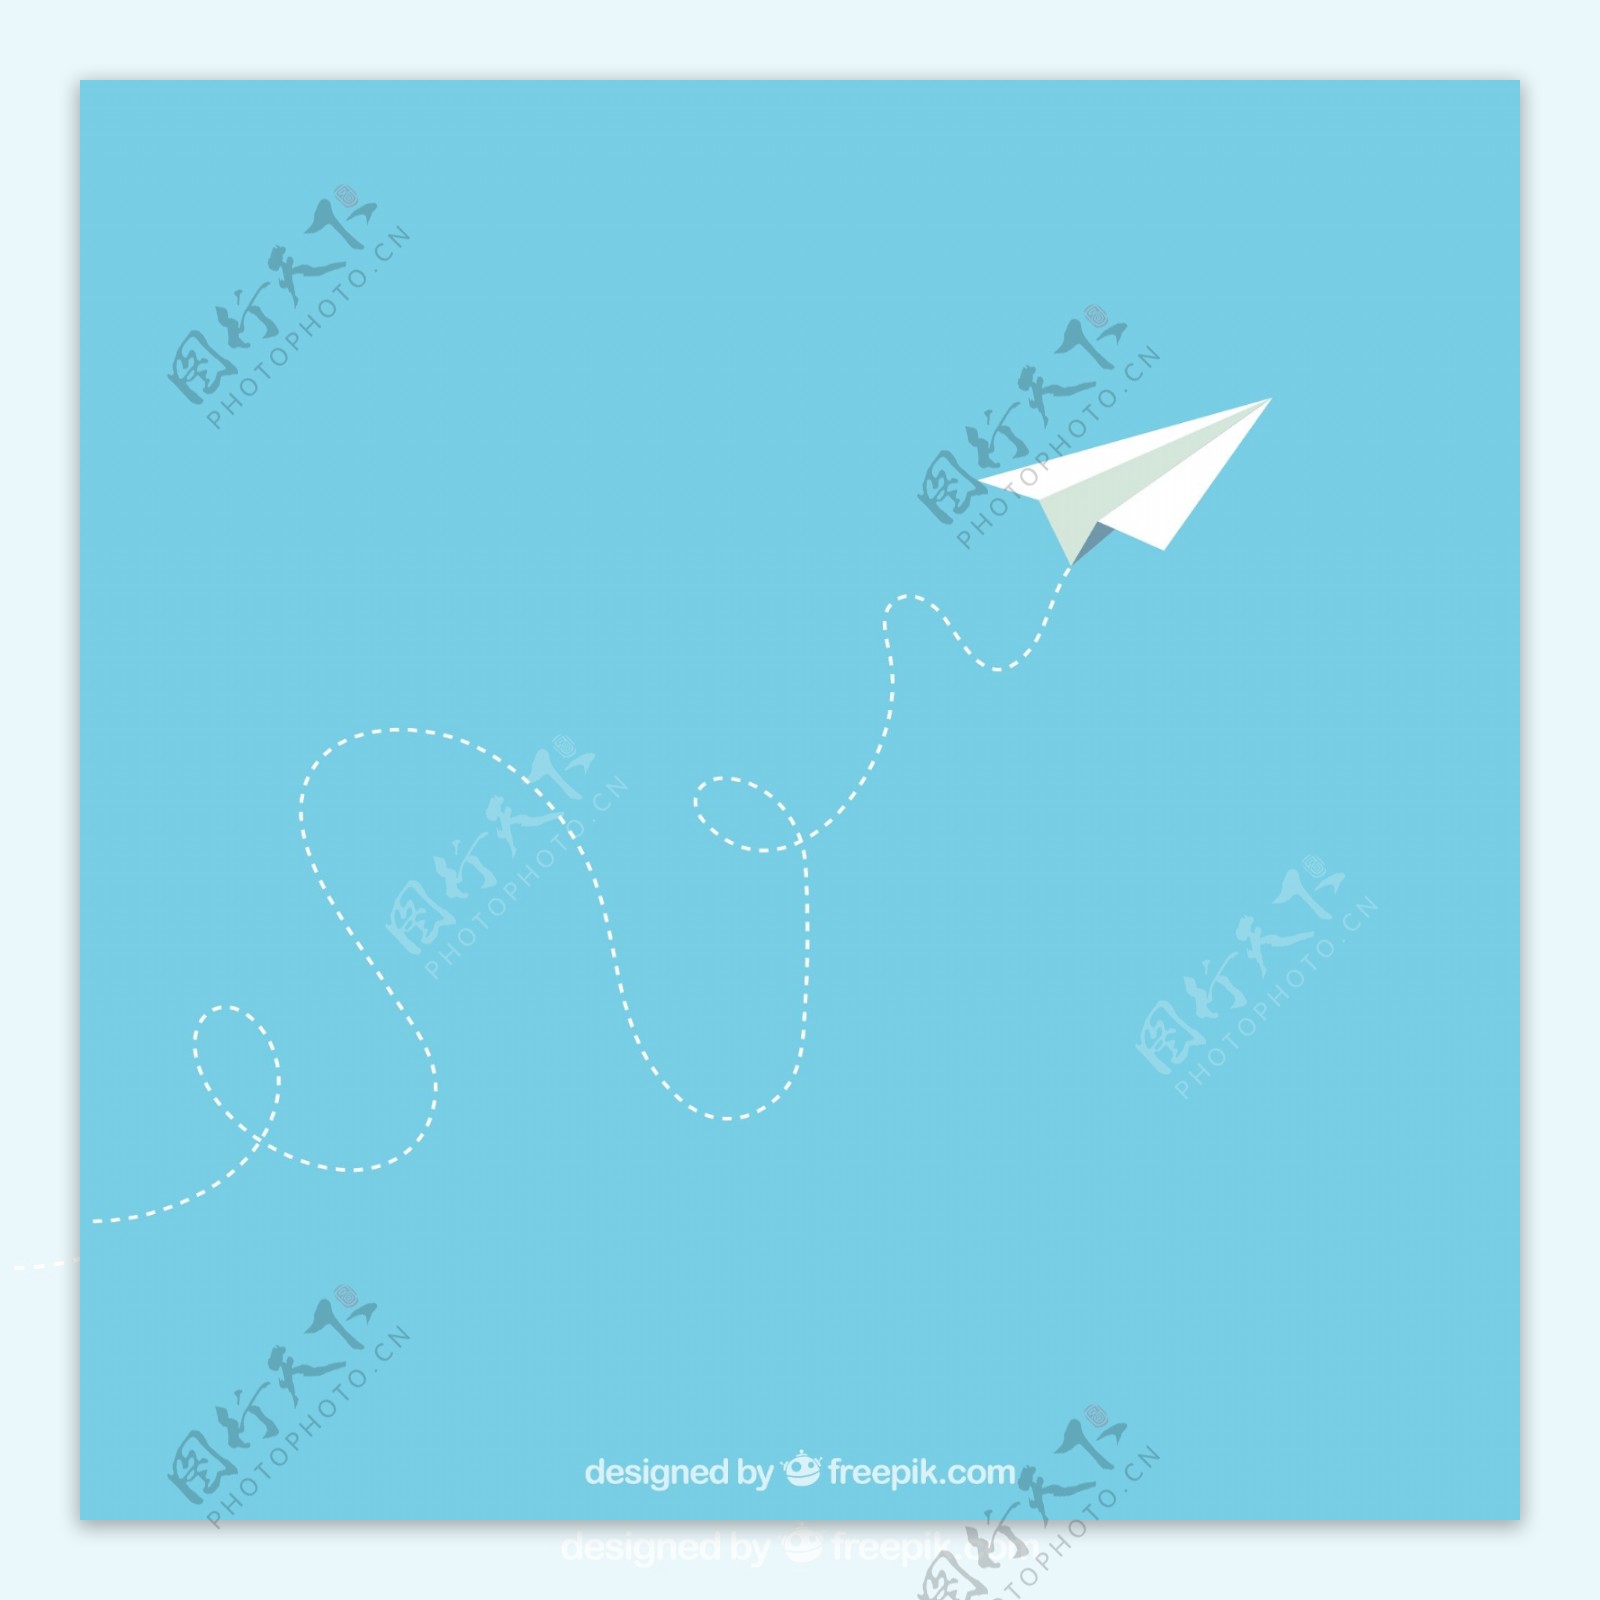 飞向天空的纸飞机矢量素材图片